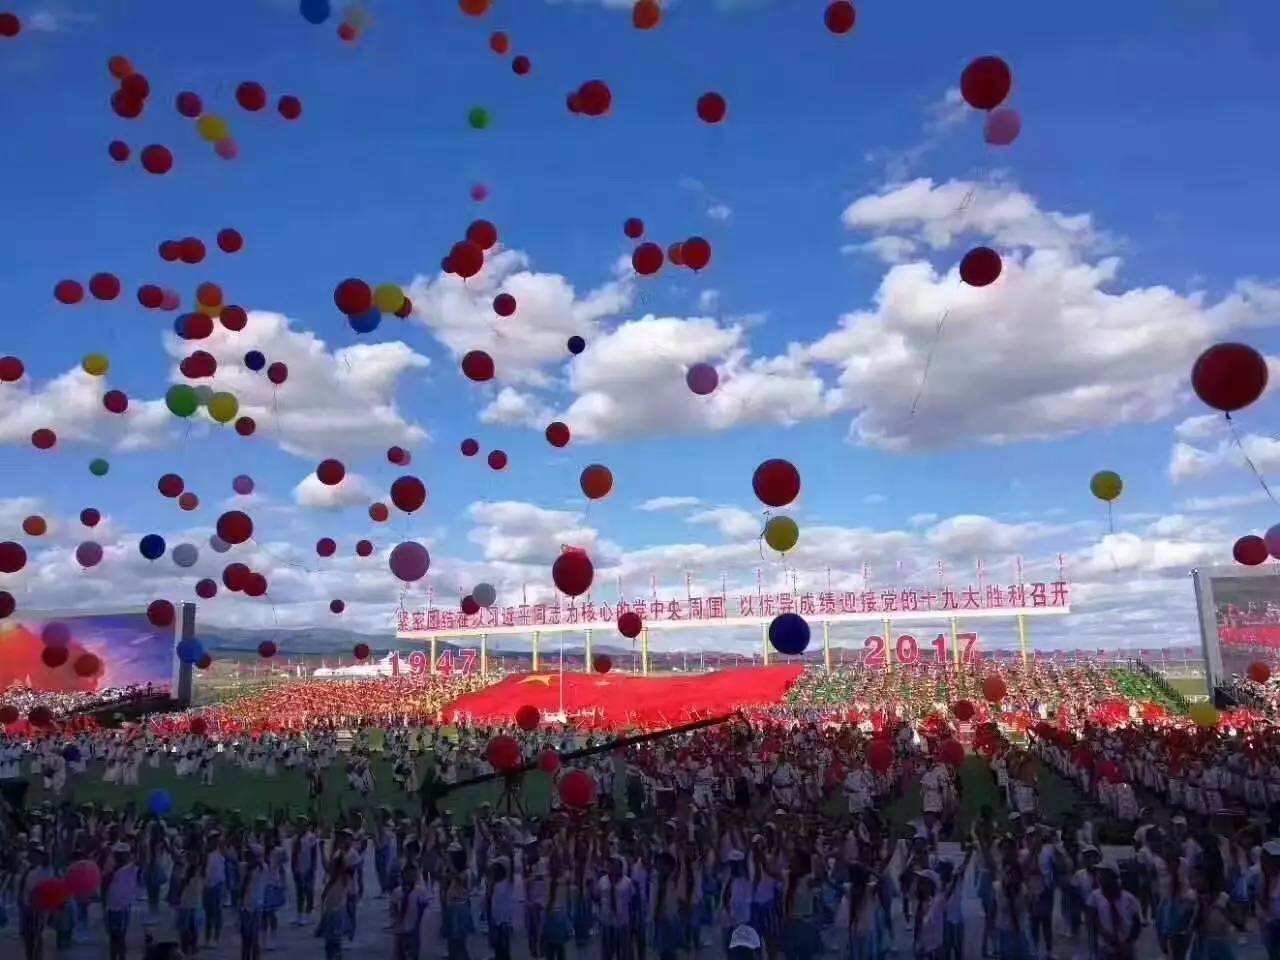 内蒙古自治区成立70周年庆祝大会网络直播开始啦！在线观看，为内蒙古喝彩！